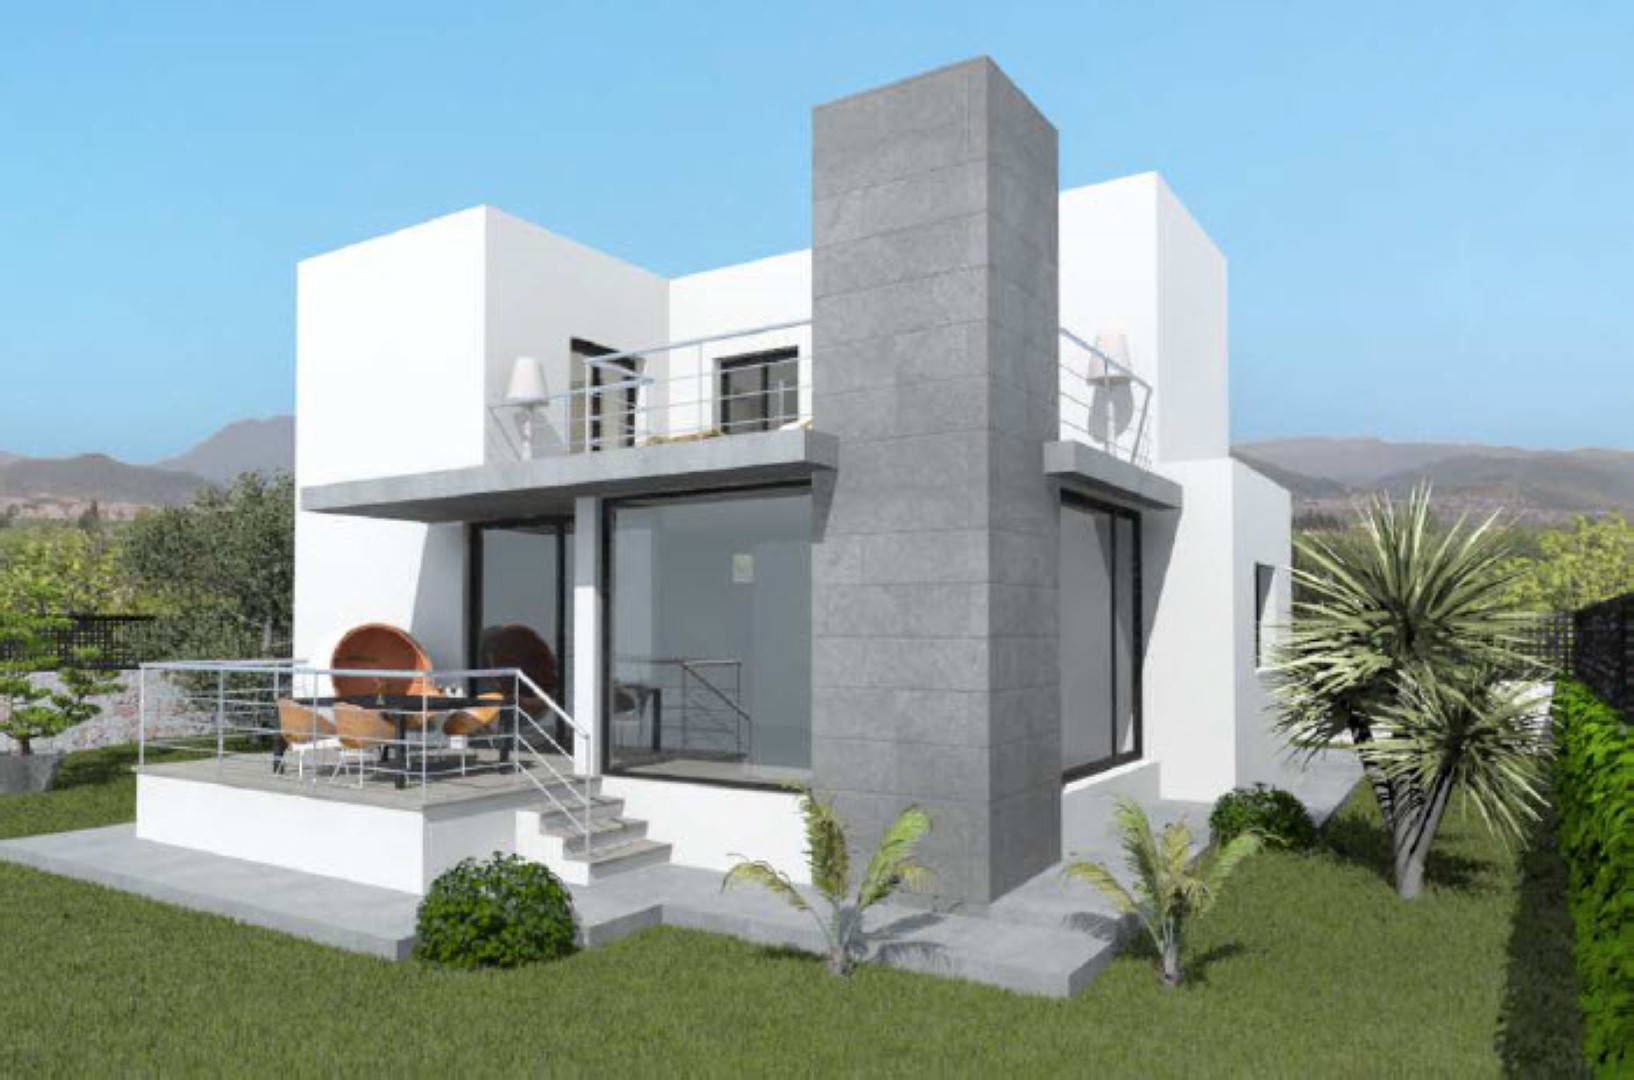 Villa de obra nueva en venta en La Sella, ubicada cerca del campo de golf. En la